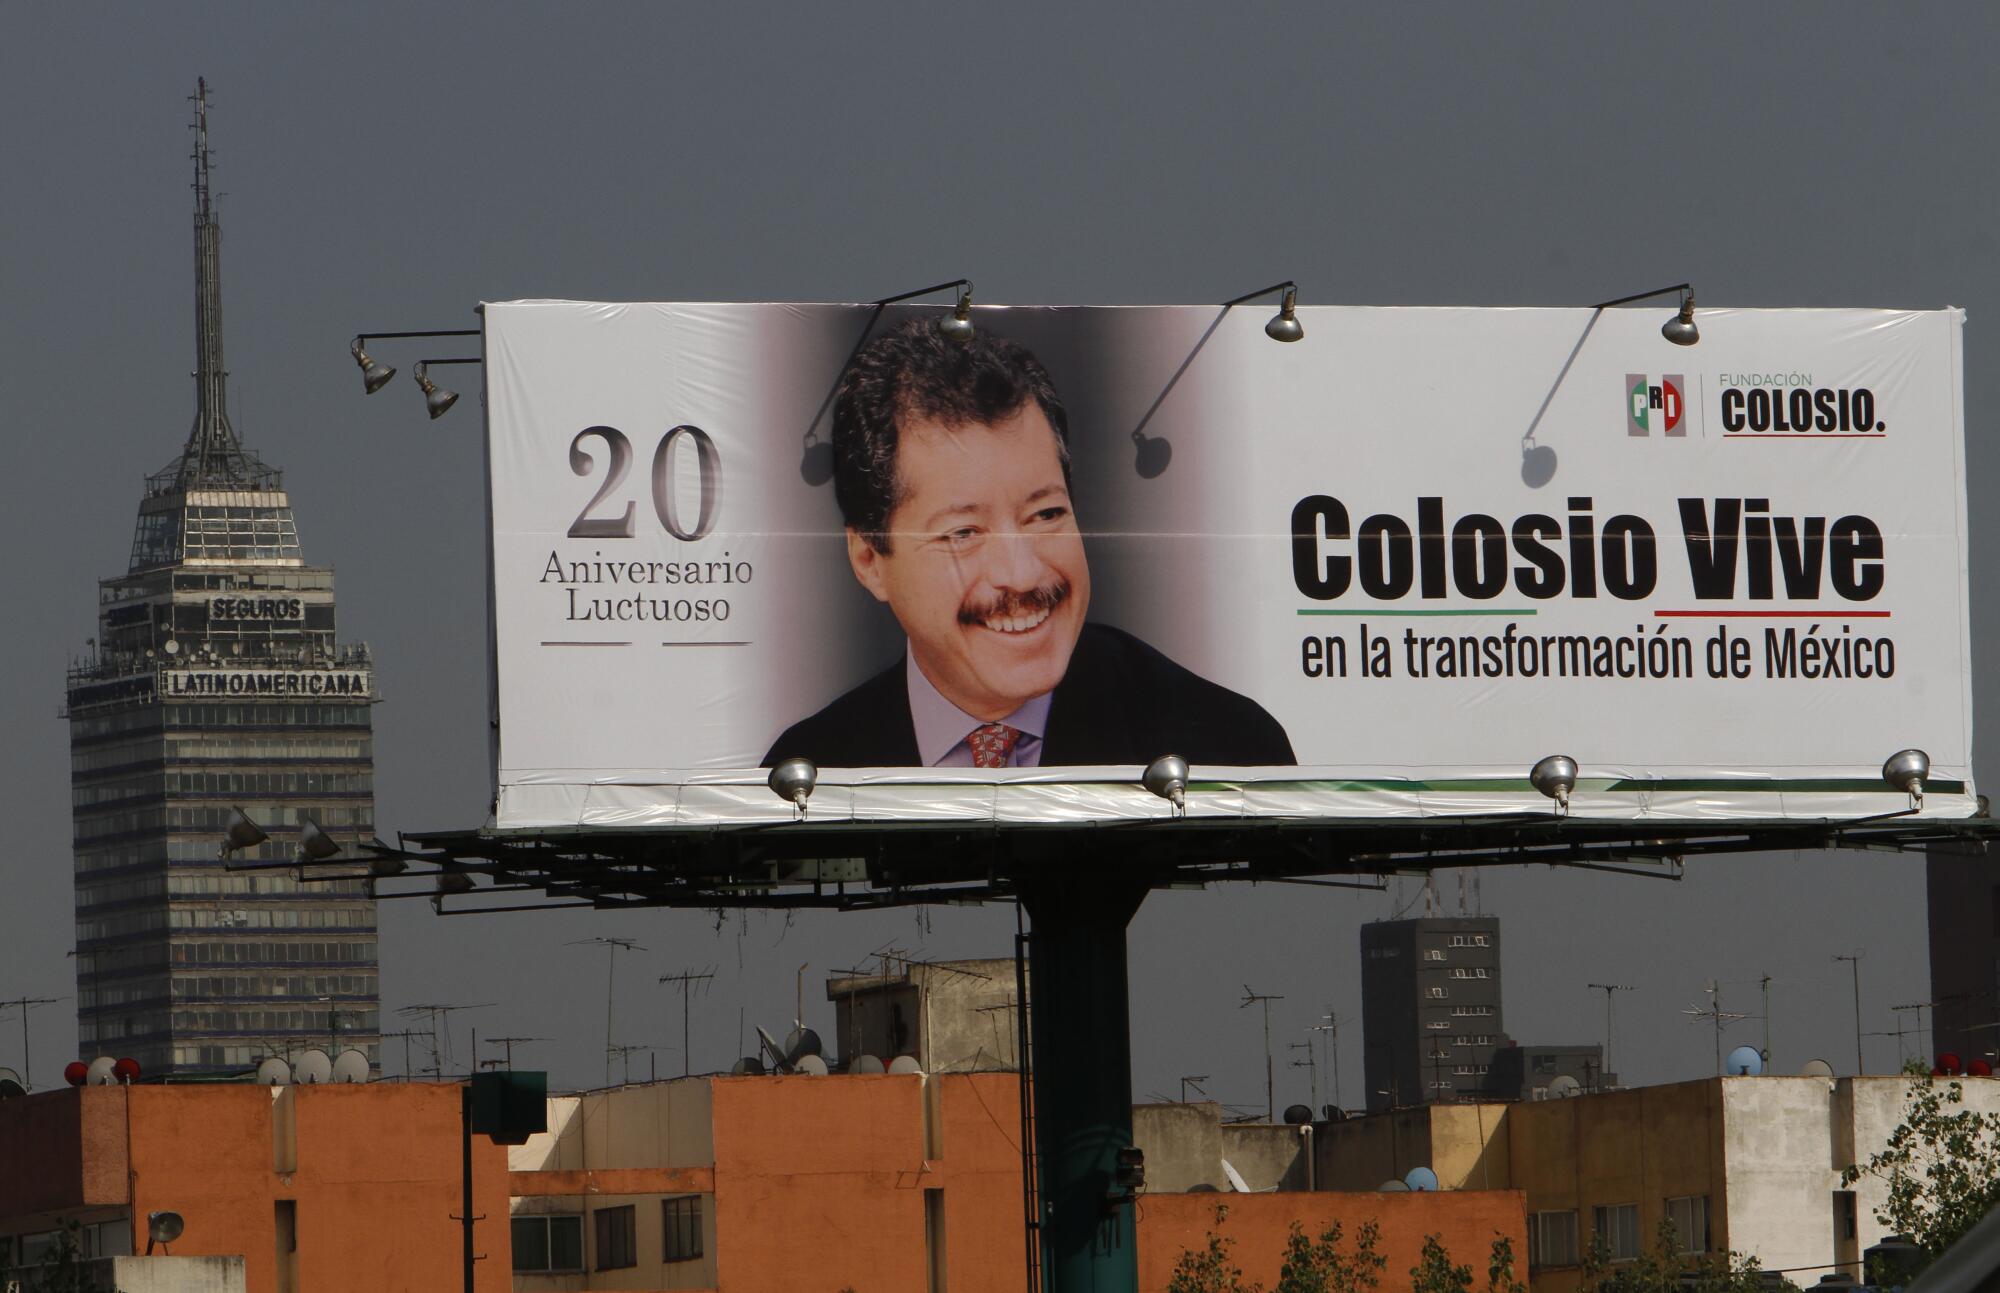 Panneau d'affichage avec l'image du candidat assassiné à la présidentielle mexicaine Luis Donaldo Colosio